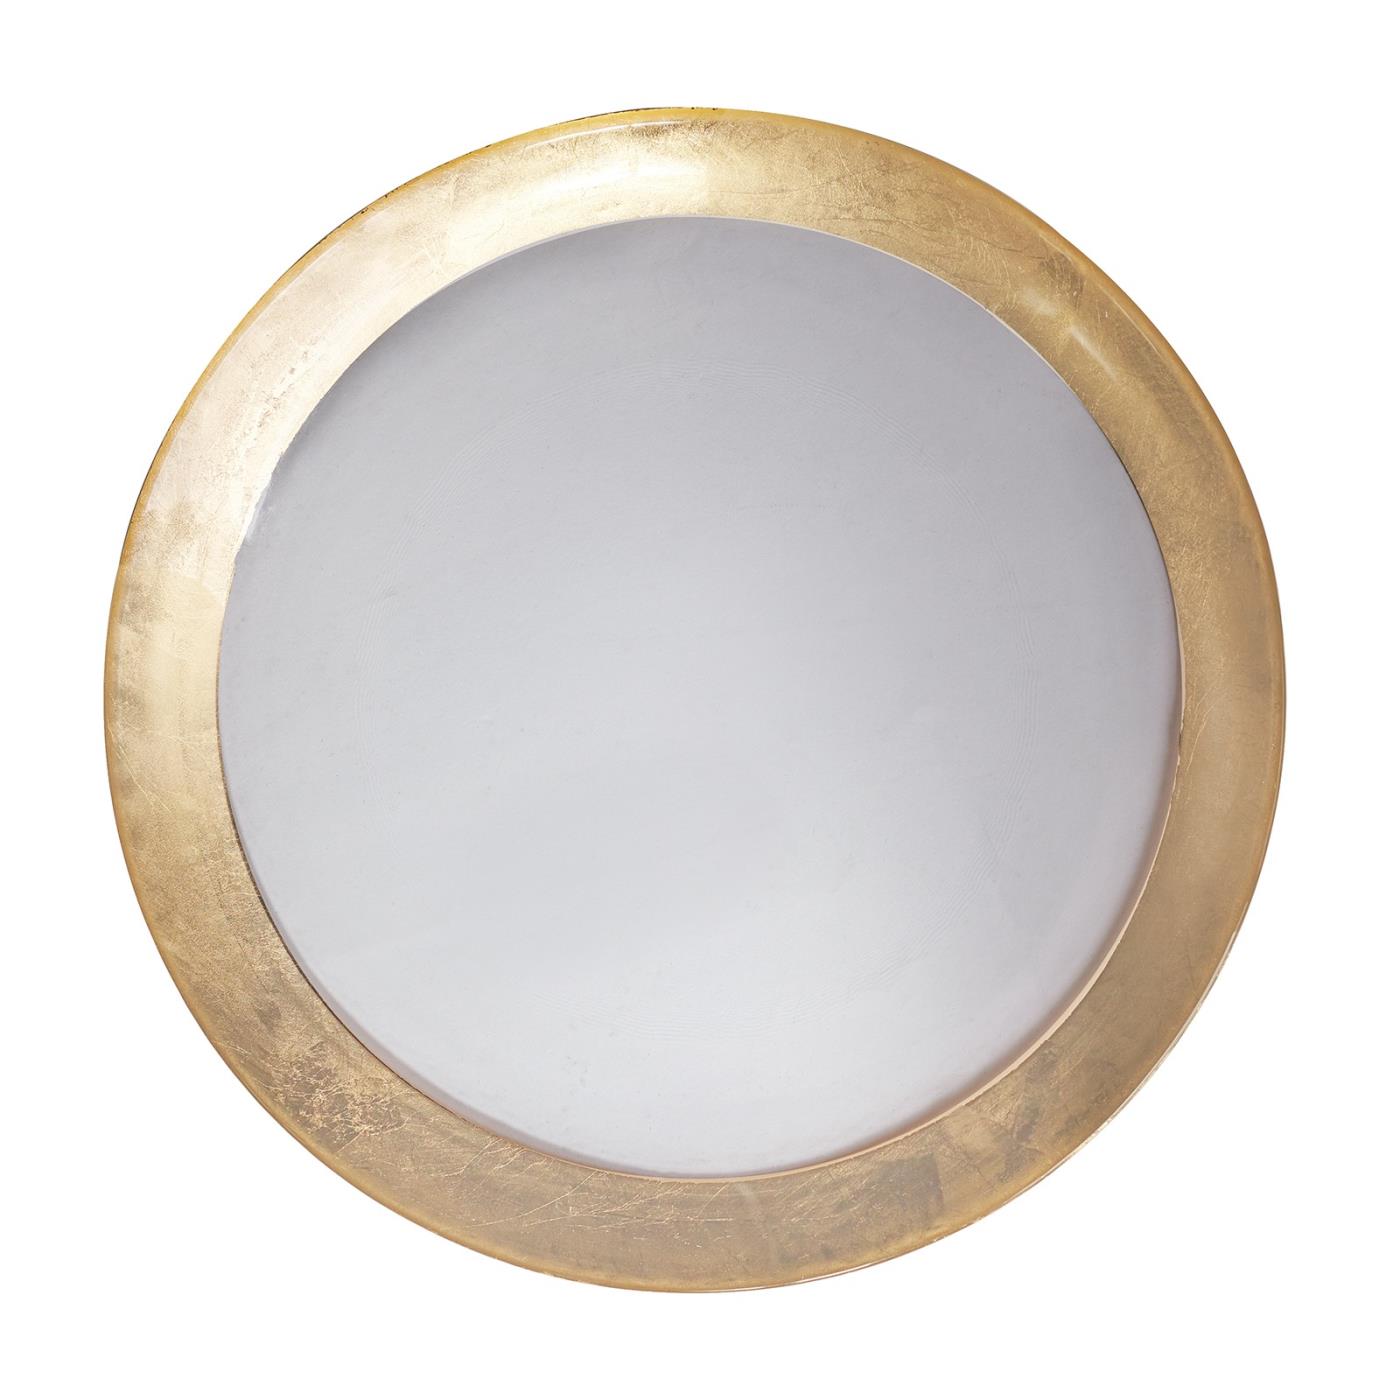 Gold Band Designer Plate